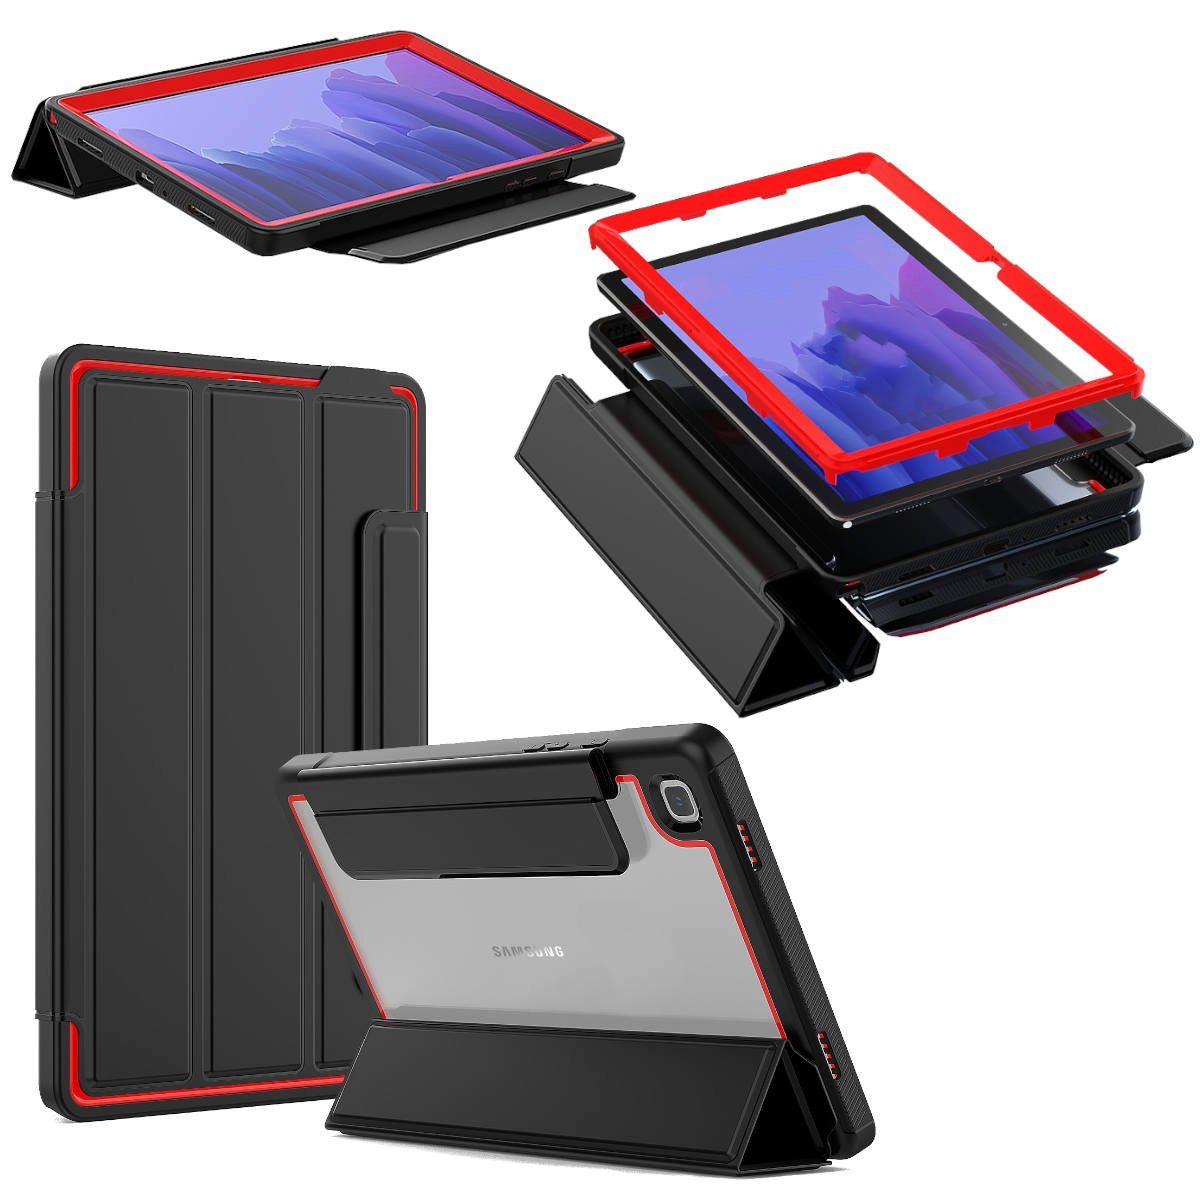 Wigento Tablet-Hülle »Für Samsung Galaxy Tab A7 T500 / T505 2020  aufstellbare Outdoor Hybrid Tablet Tasche Etuis Cover Case Schutz Robust  Neu« online kaufen | OTTO